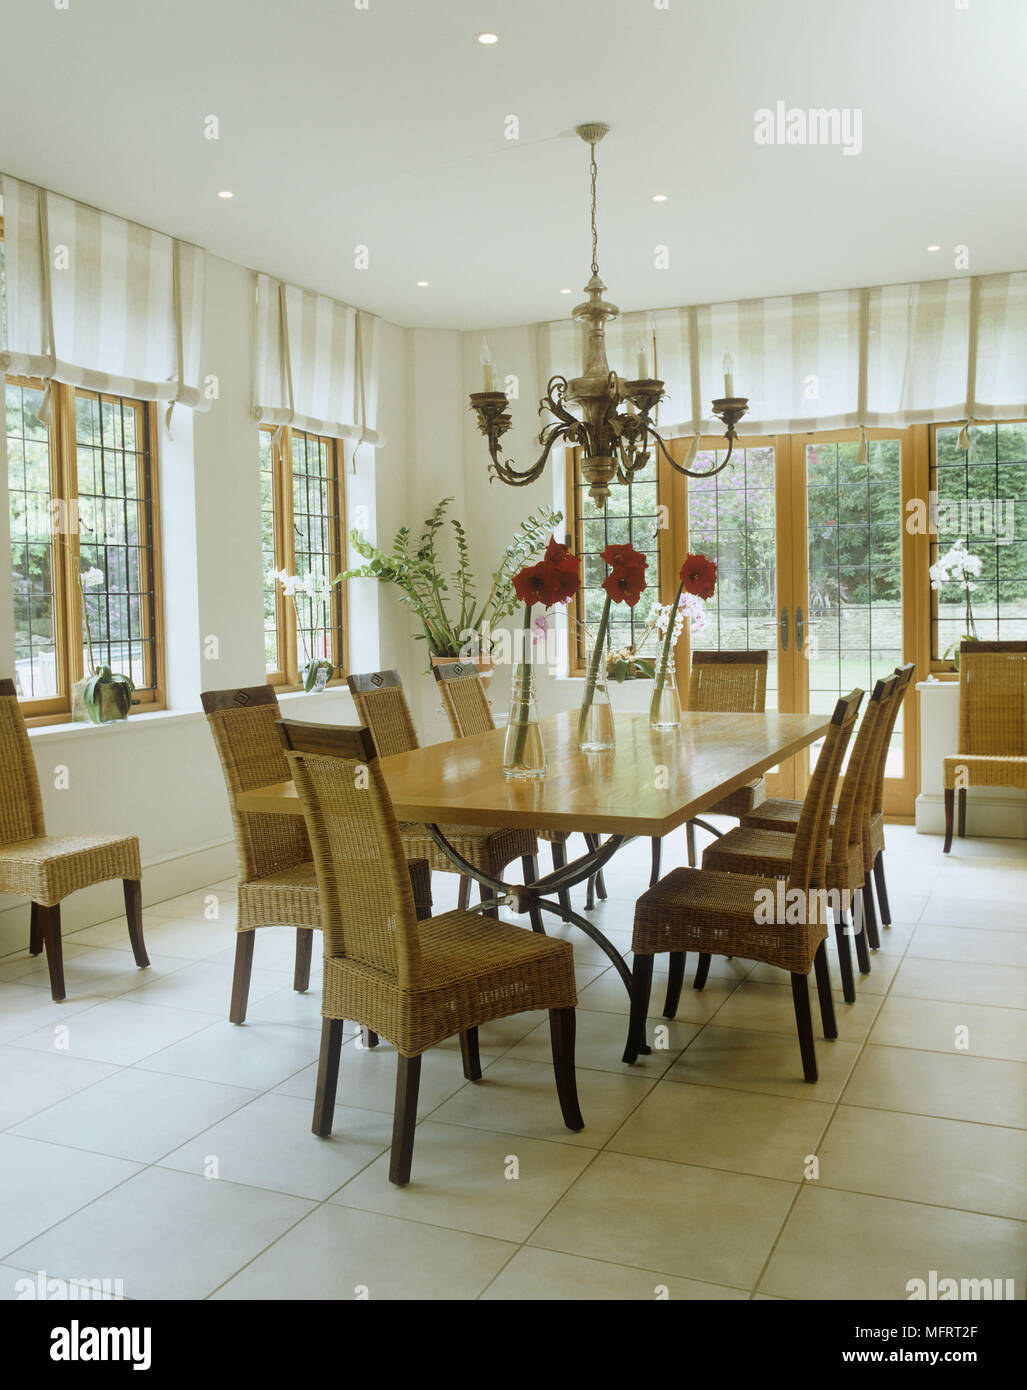 Table à manger et chaises sur carrelage dans salon avec windows. Banque D'Images